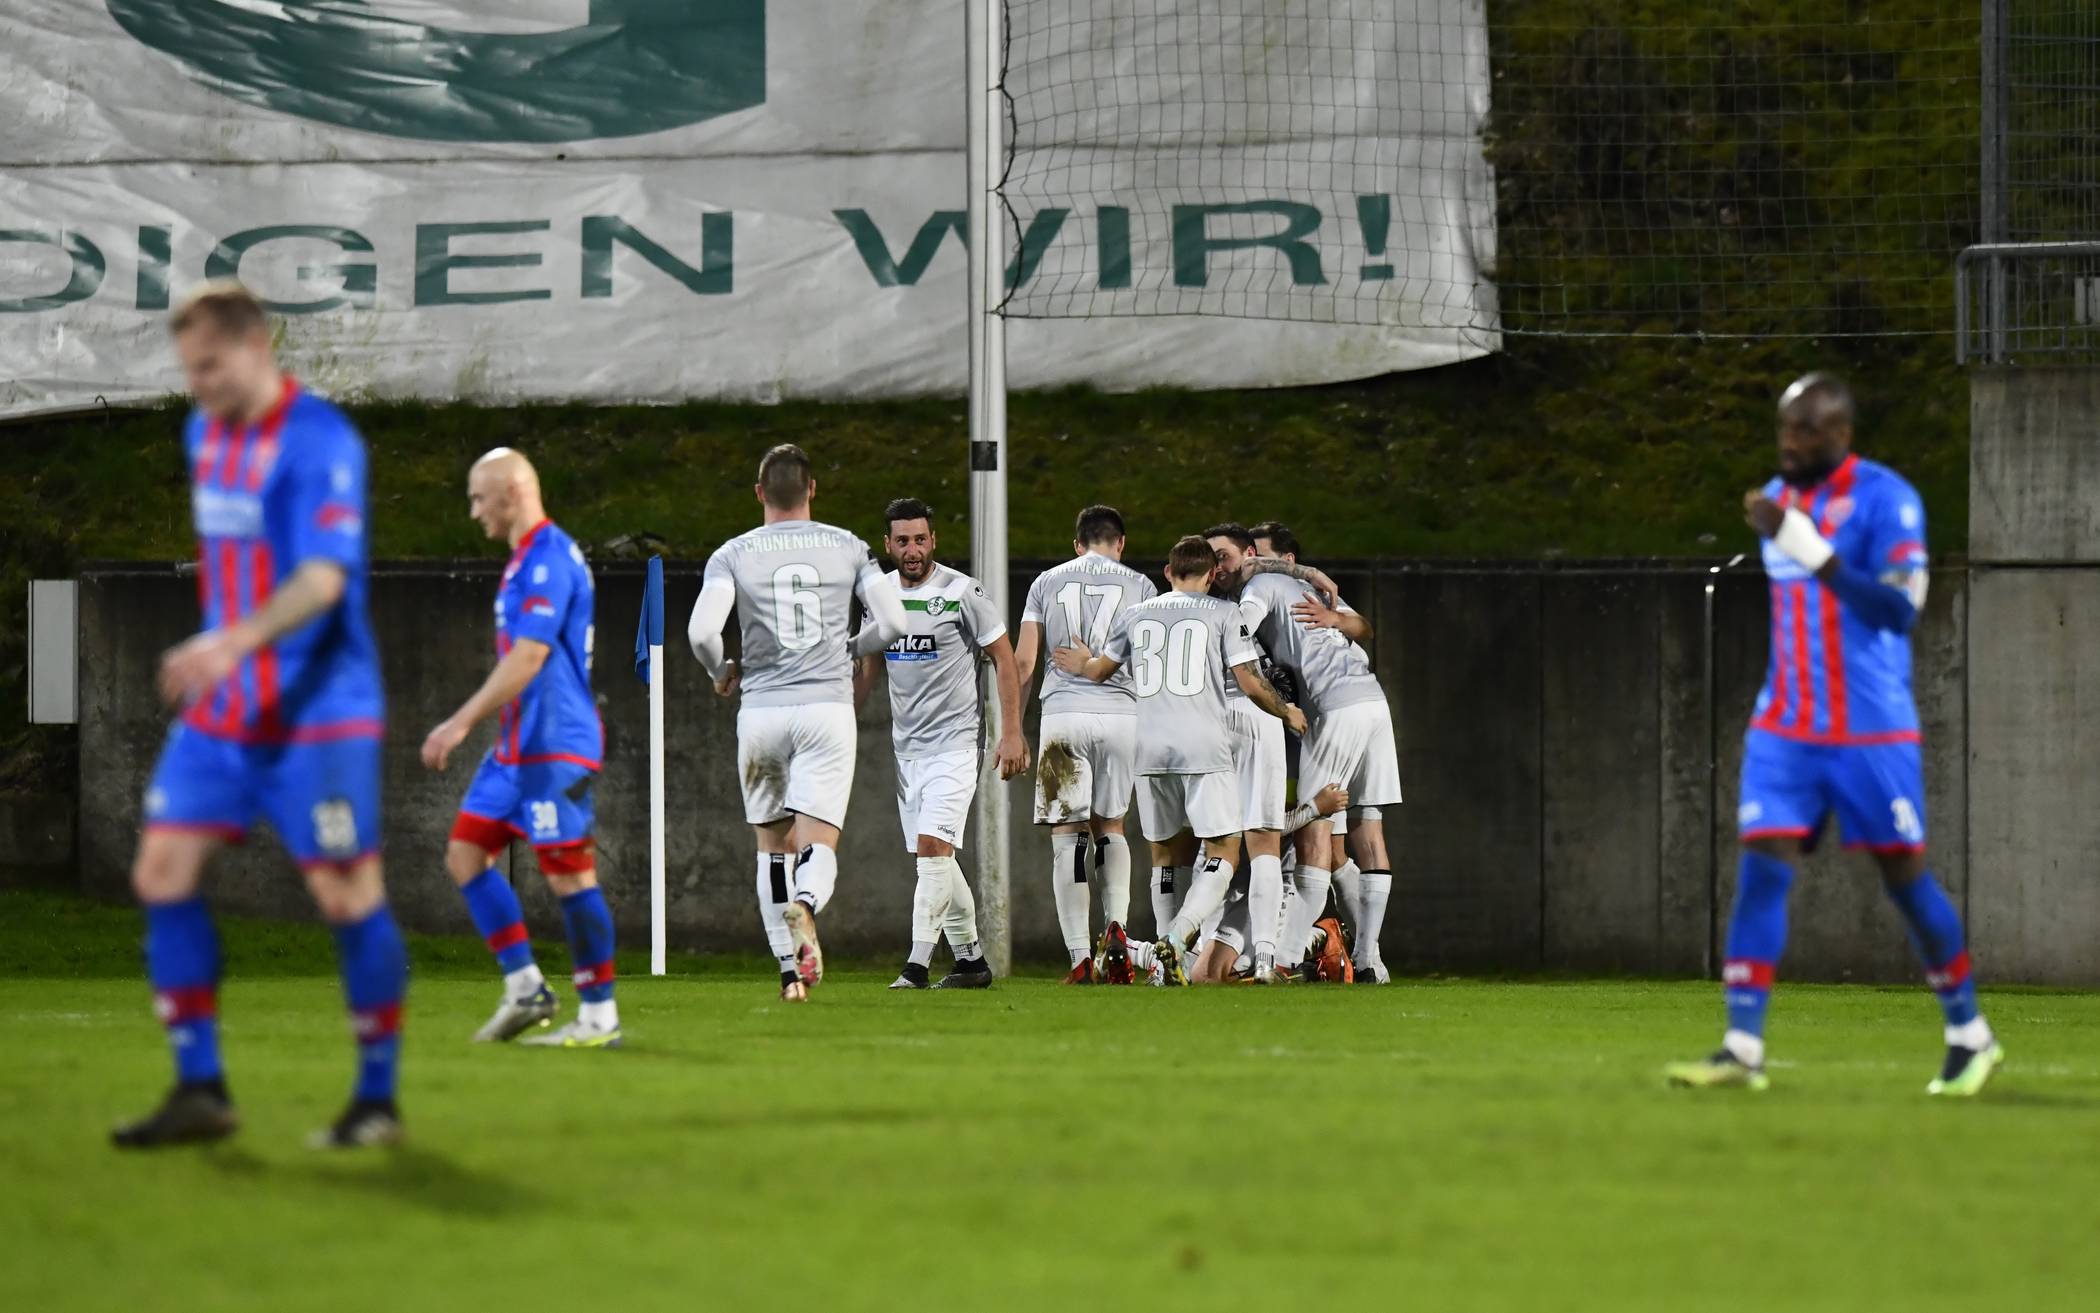  Nach dem 3:2-Sieg im Stadion gegen Uerdingen will Cronenberg nun an der heimischen Haupstraße gegen Hamborn nachlegen. 